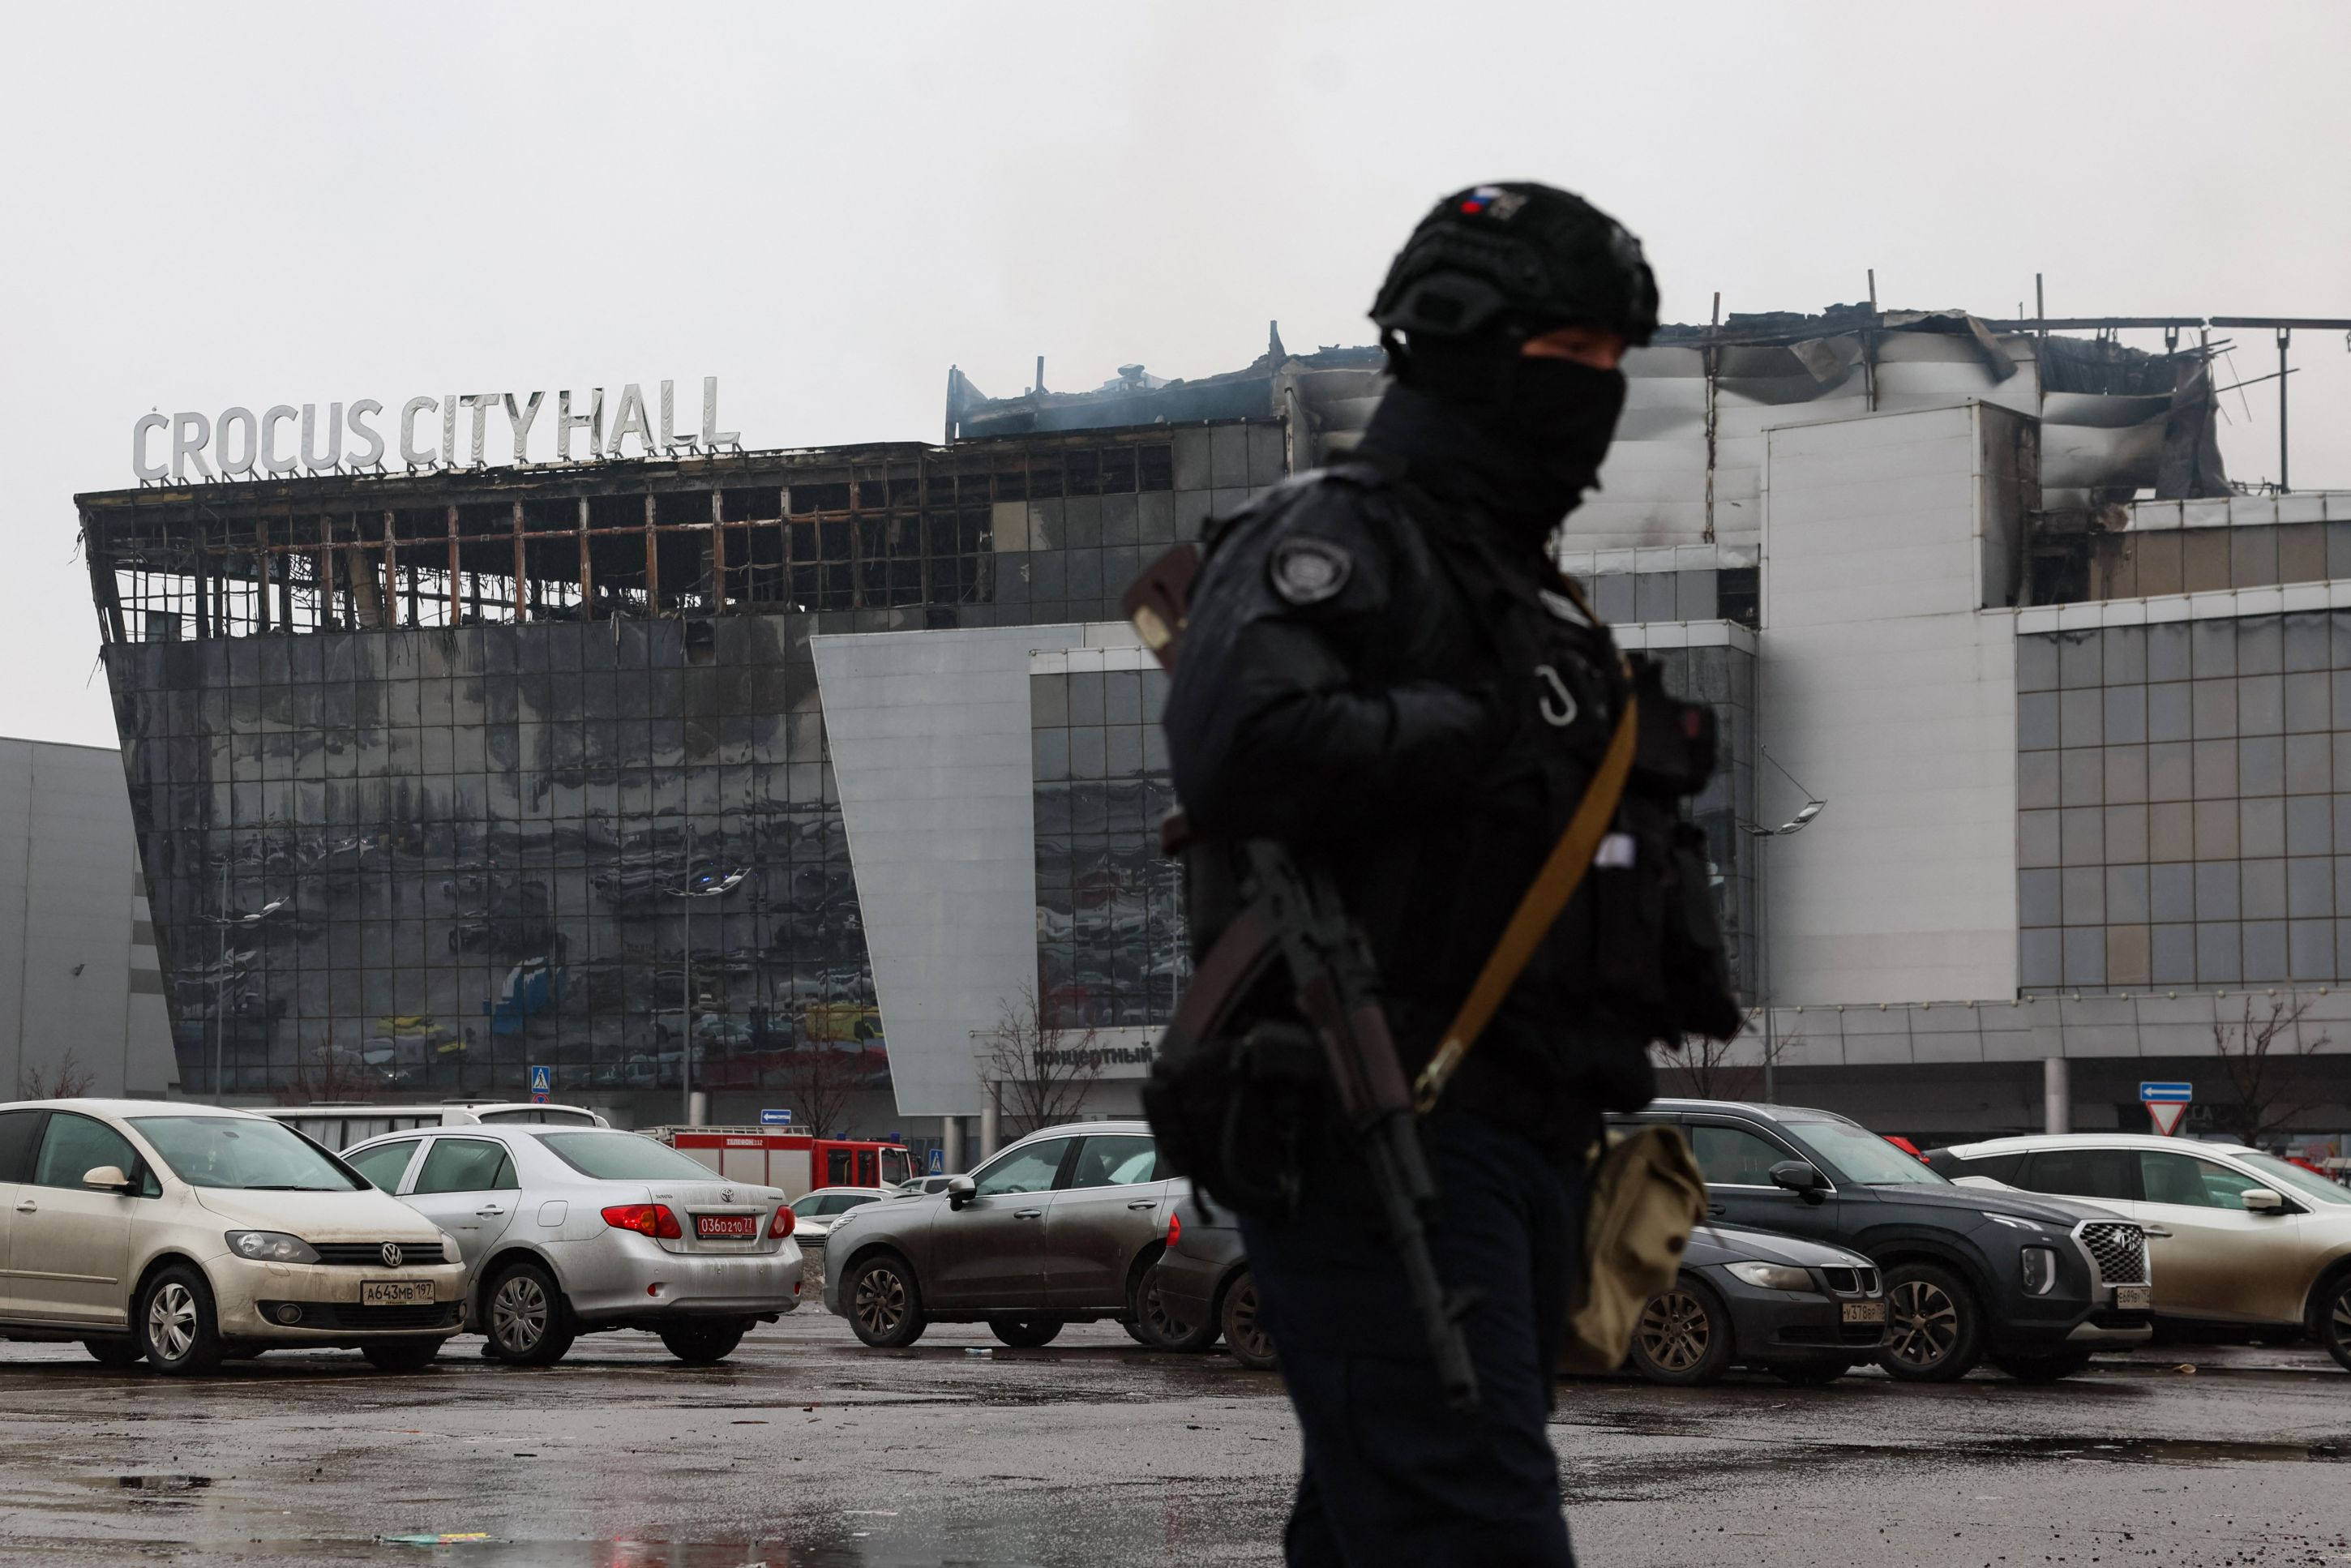 po zamachu w moskwie: rosyjska prowincja nienawidzi stolicy